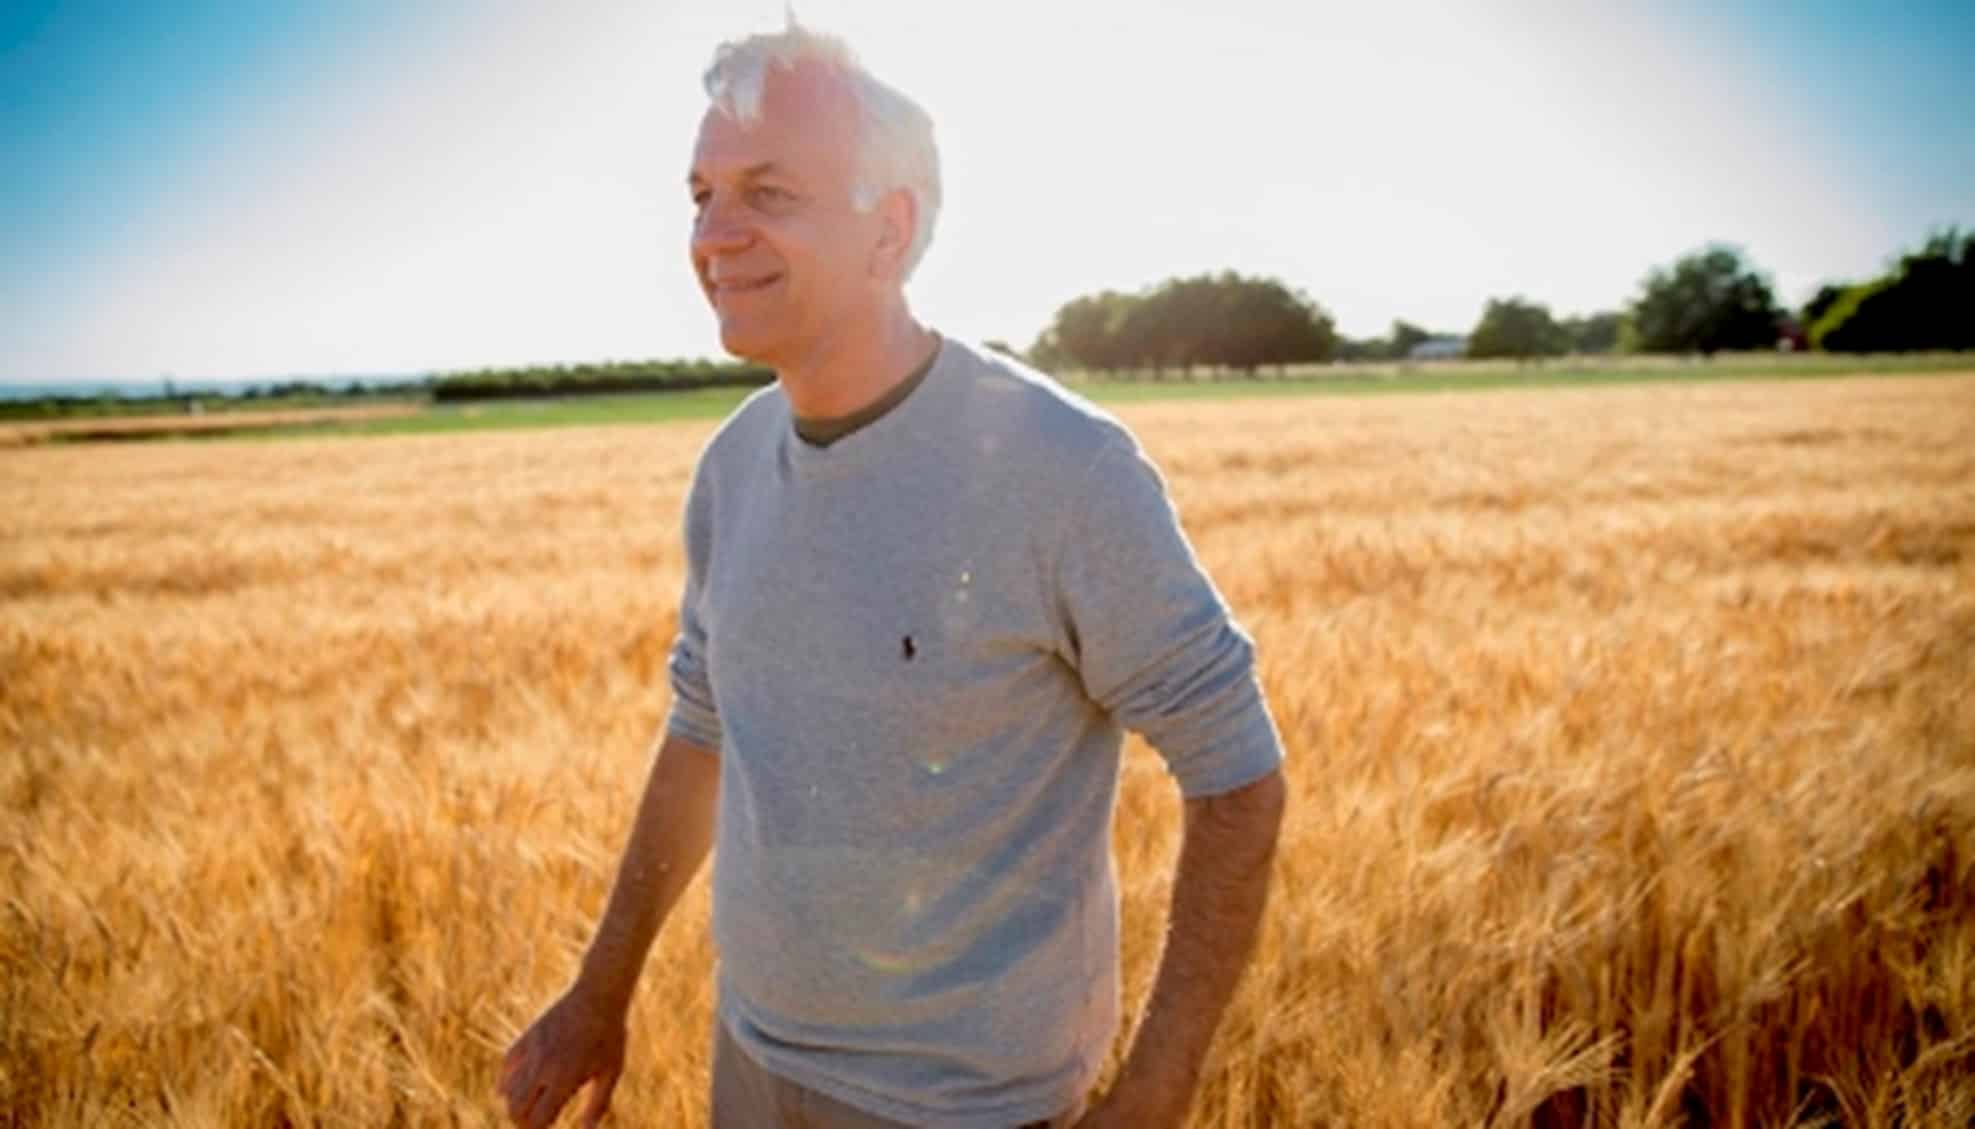 Ducovsky standing in a field of wheat.